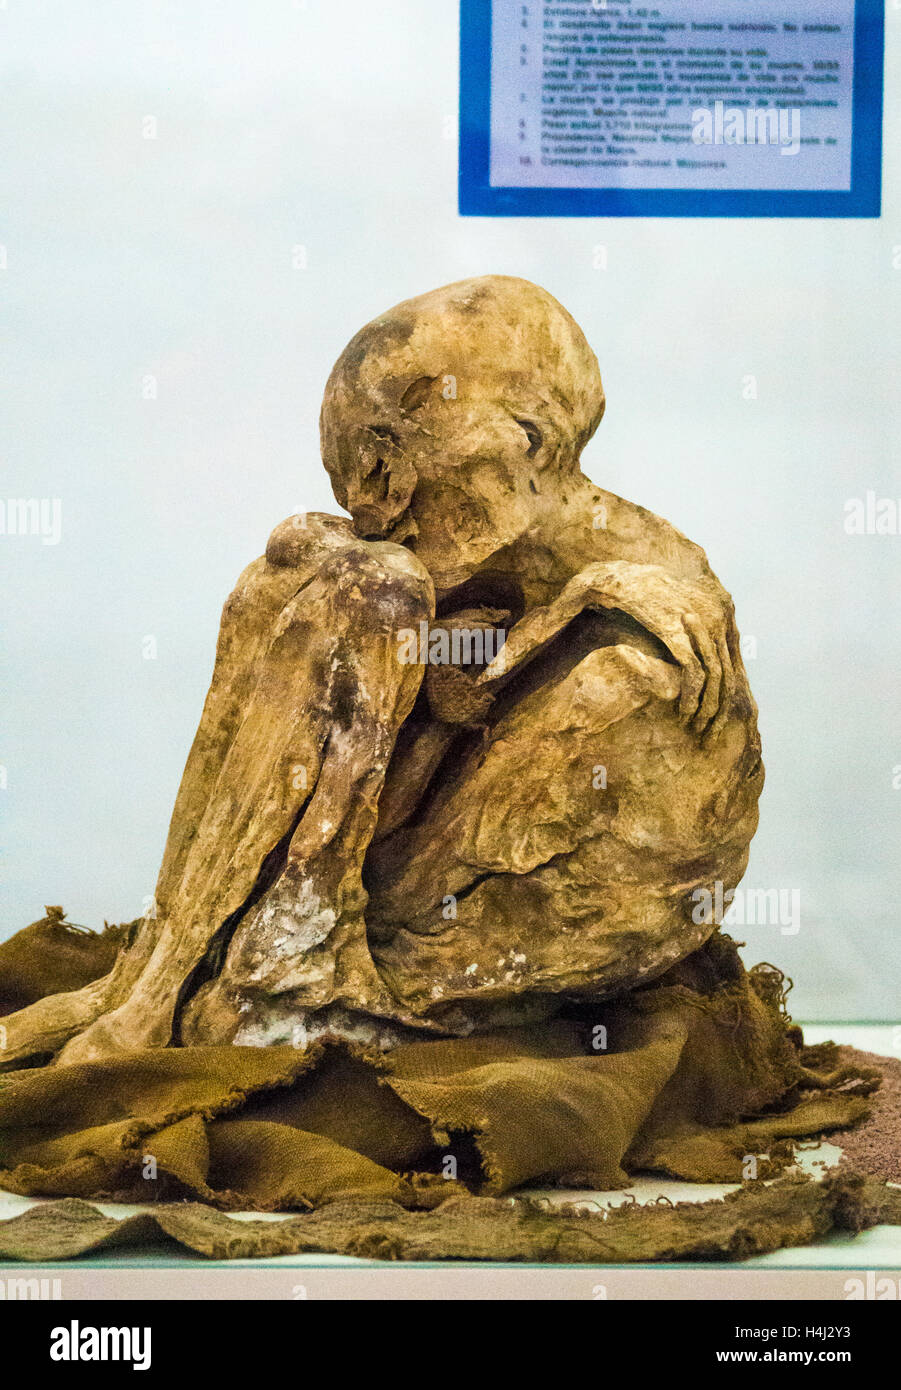 Antiche mummie conservate in zone aride ad alta altitudine clima dell'altipiano della Bolivia, ora conservata presso l Università di Charcas musei a Sucre Foto Stock